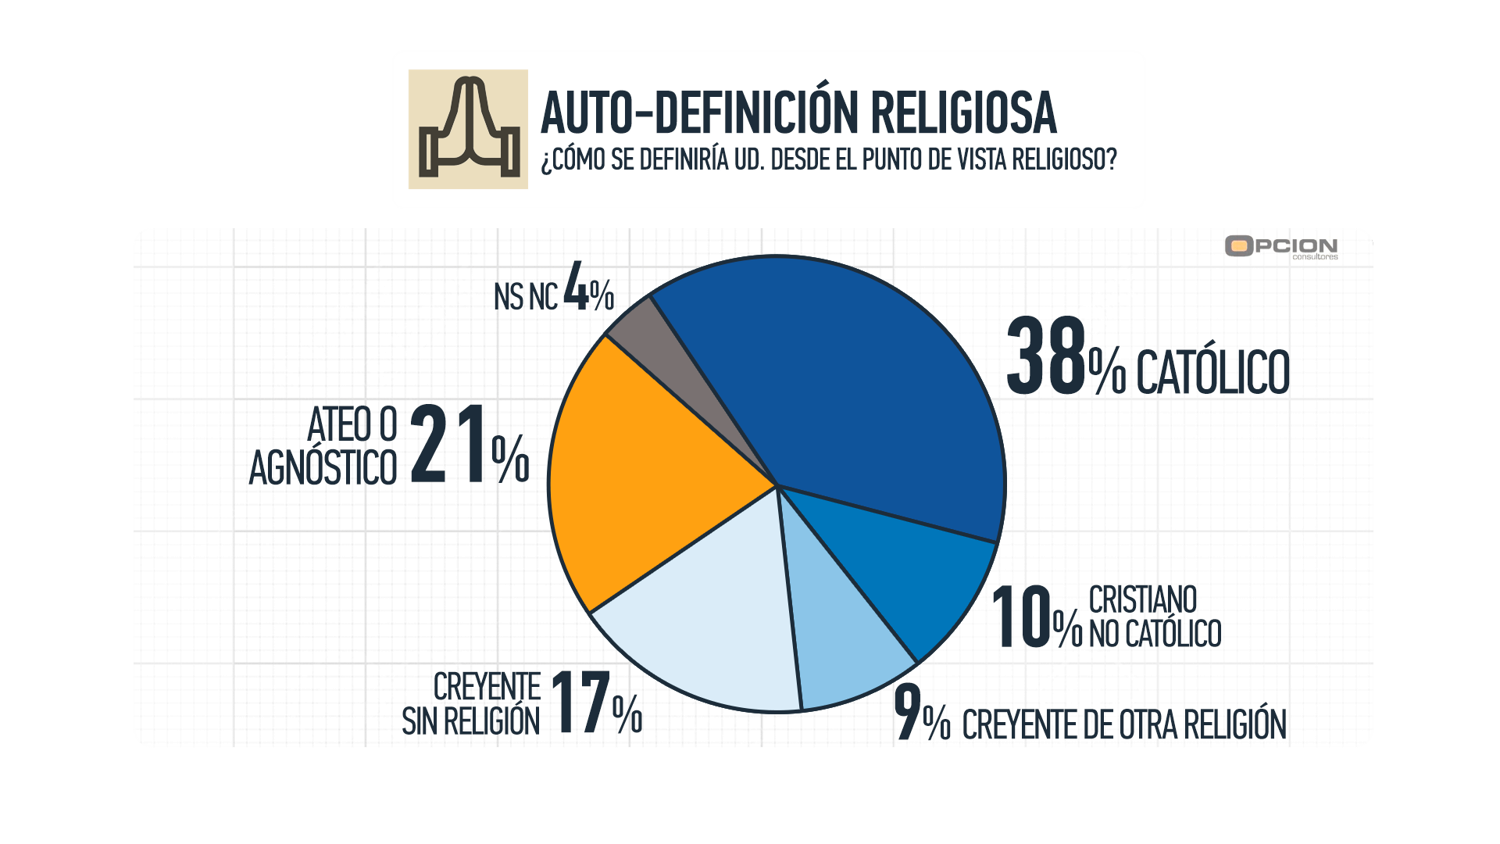 Los uruguayos y la religión: 38% Católicos; 10% Cristiano No Católico; 9% Creyente de otra Religión; 17% Creyente sin Religión; 21% Ateo o Agnóstico